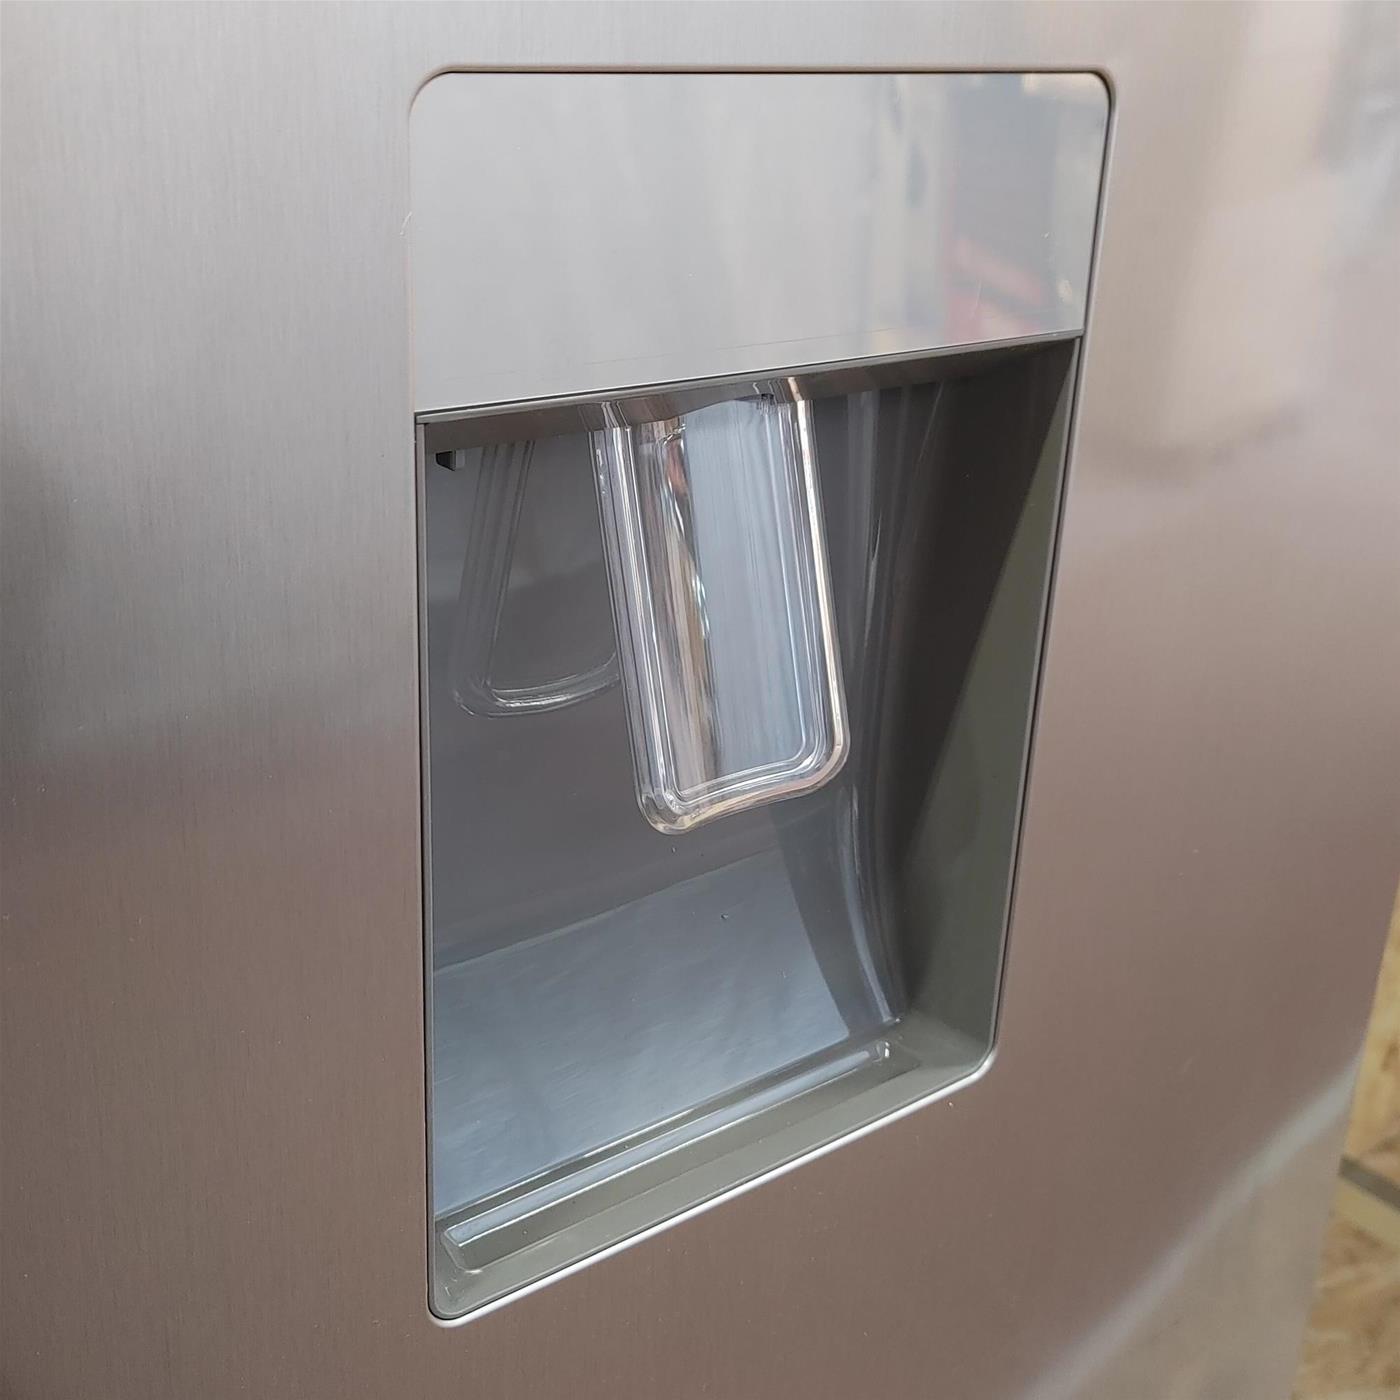 Candy Bell'Ó CMNV 6182XWD frigorifero con congelatore Libera installazione Acciaio inossidabile